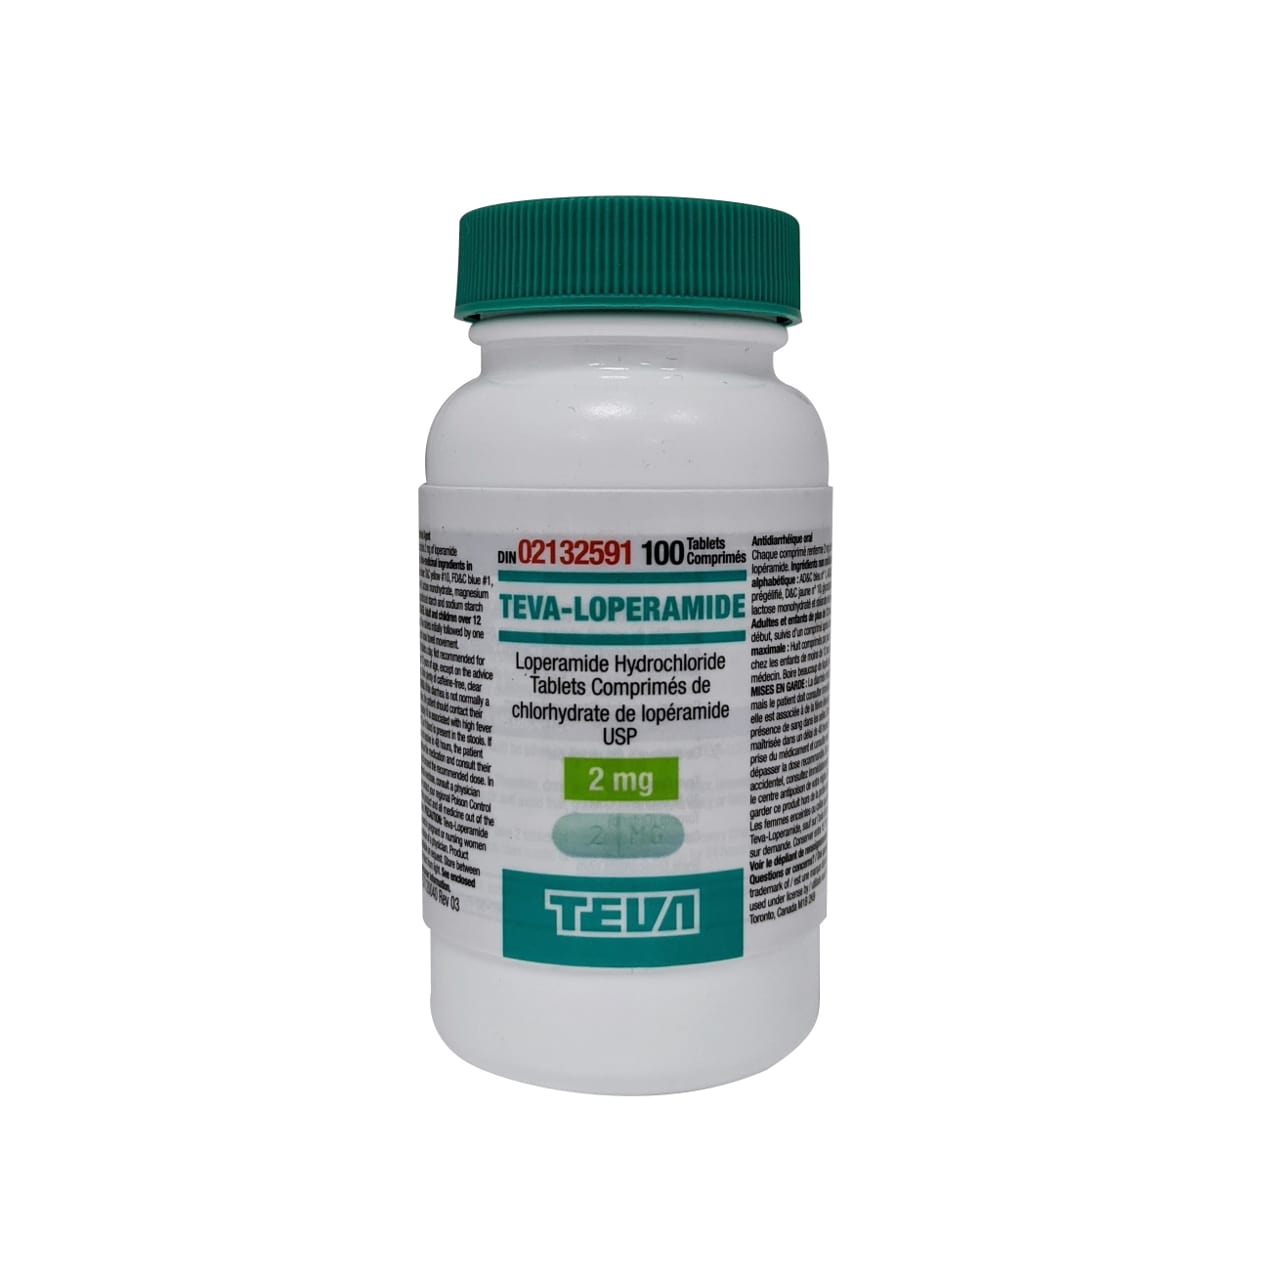 Product label for Teva-Loperamide 2mg bottle of 100 tablets.